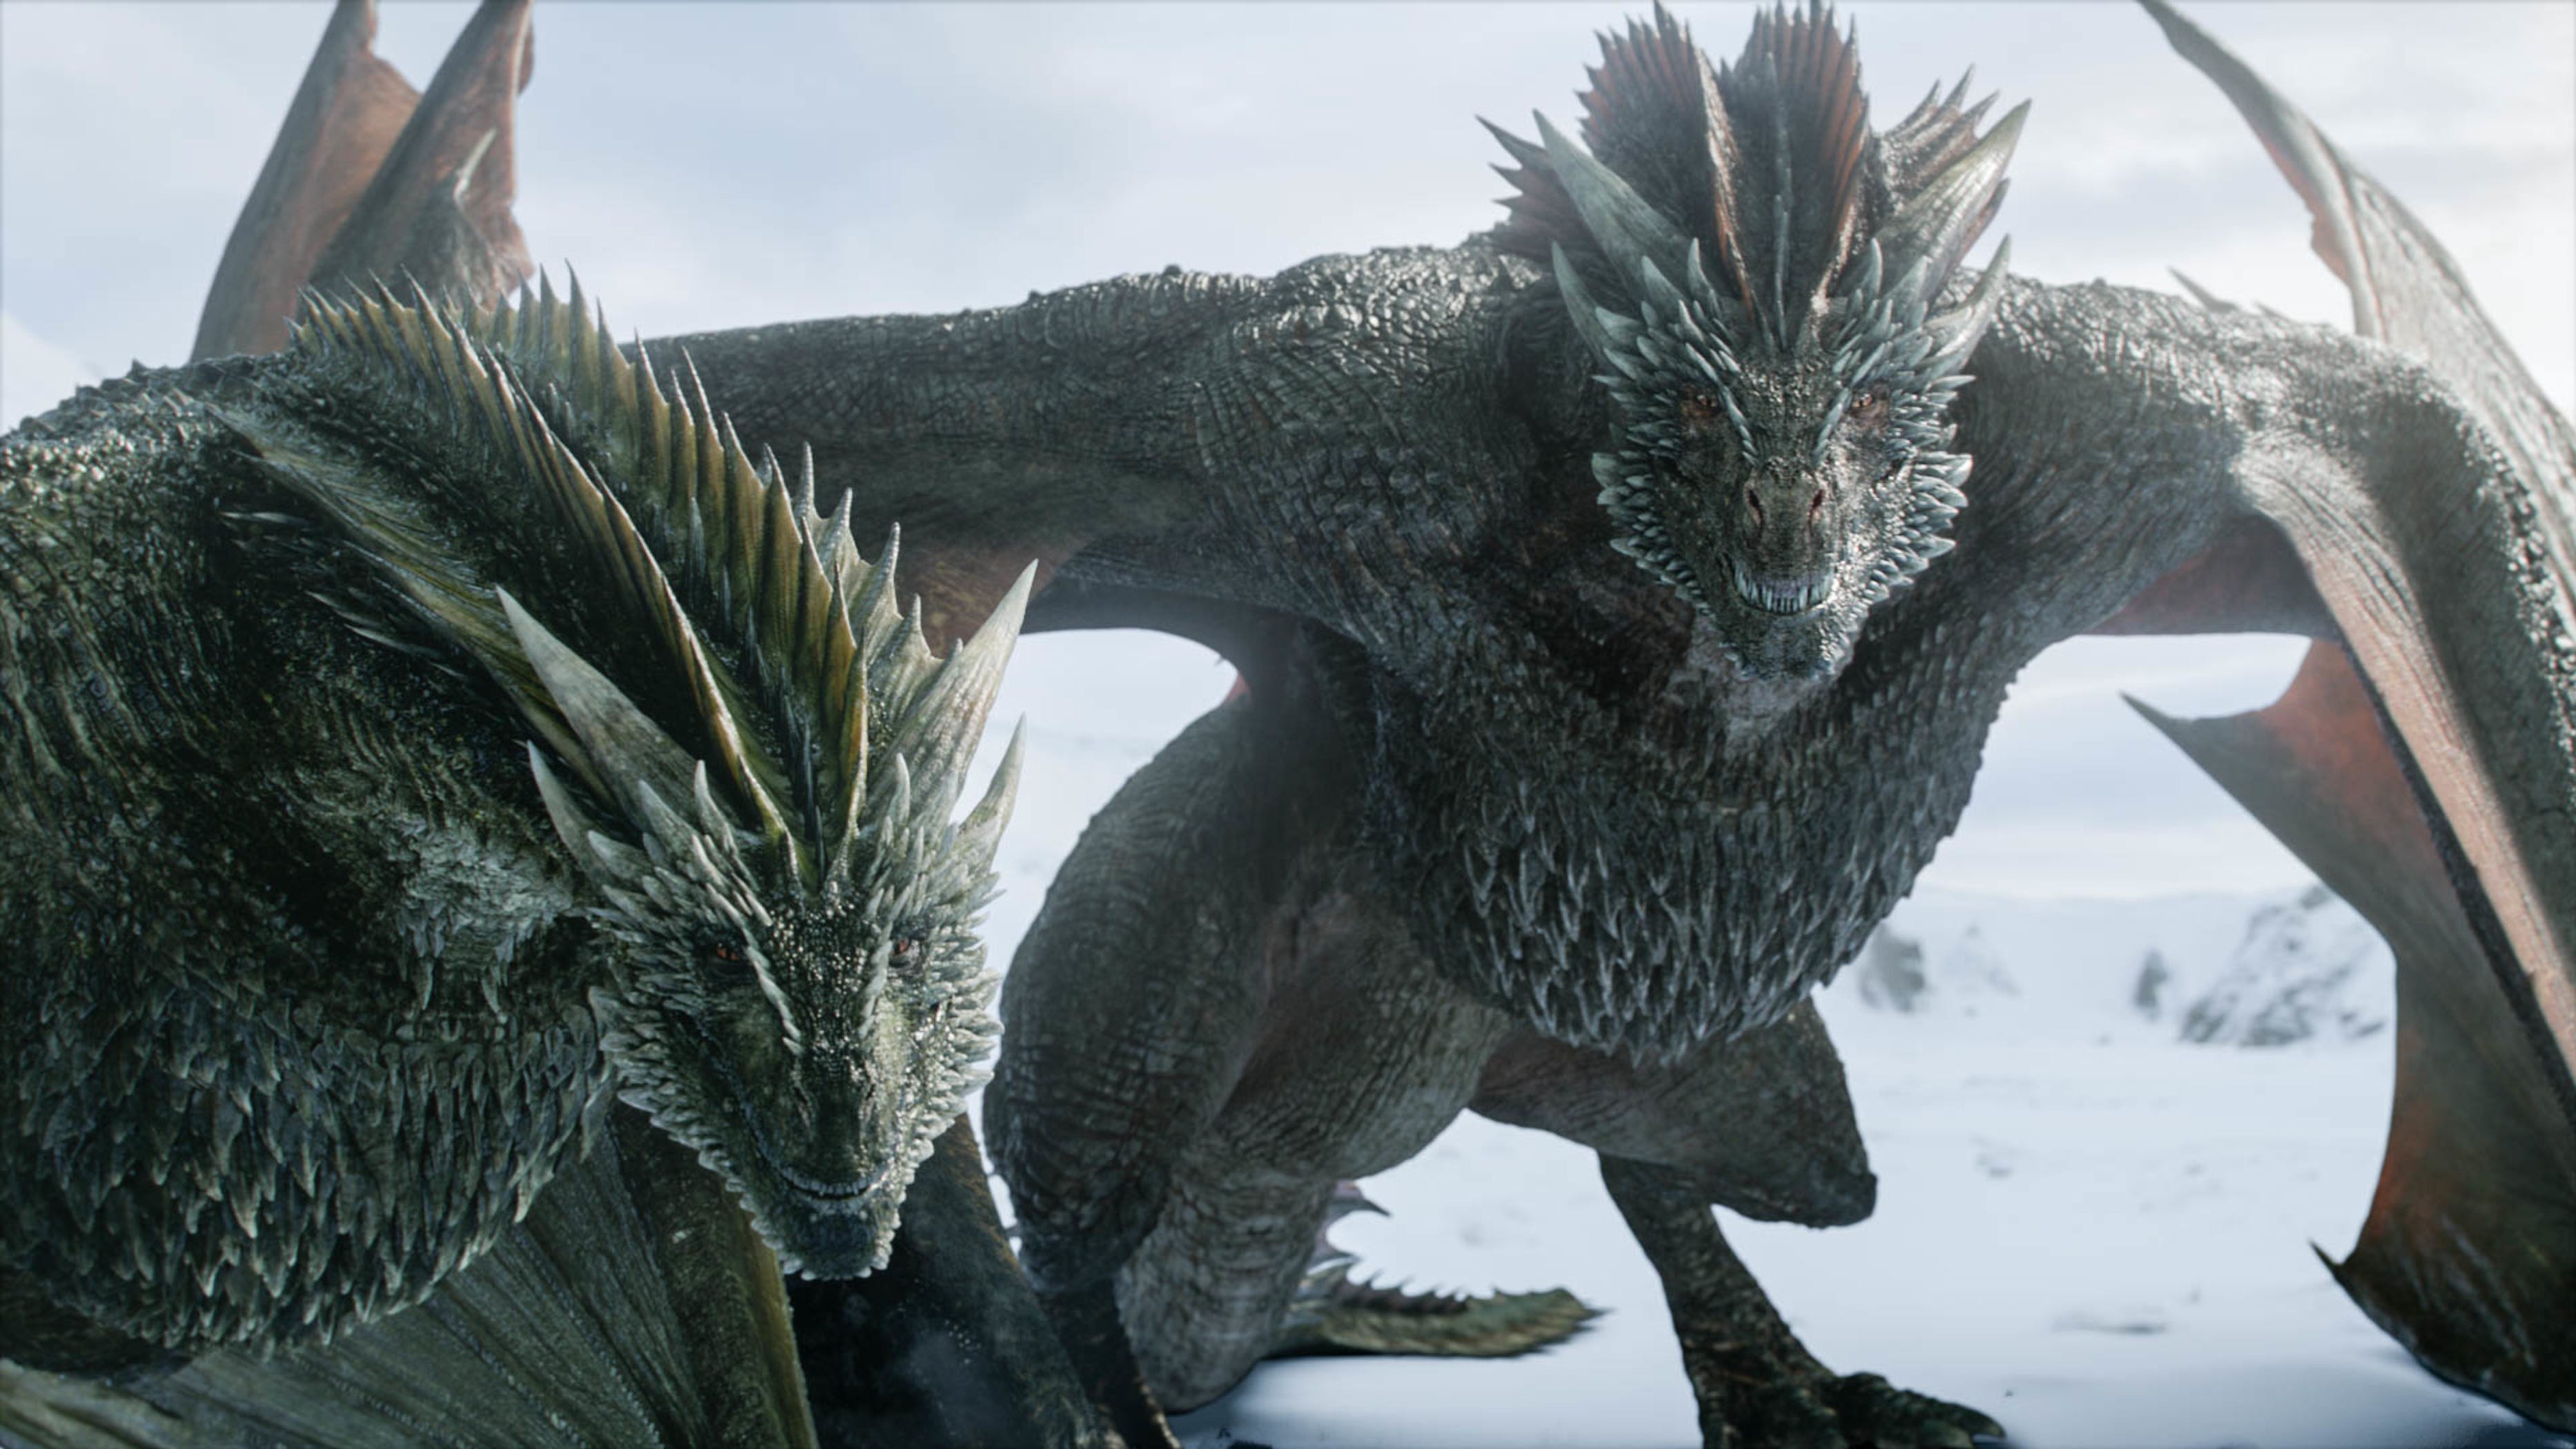 Daenerys Targaryen's dragons in "Game of Thrones."